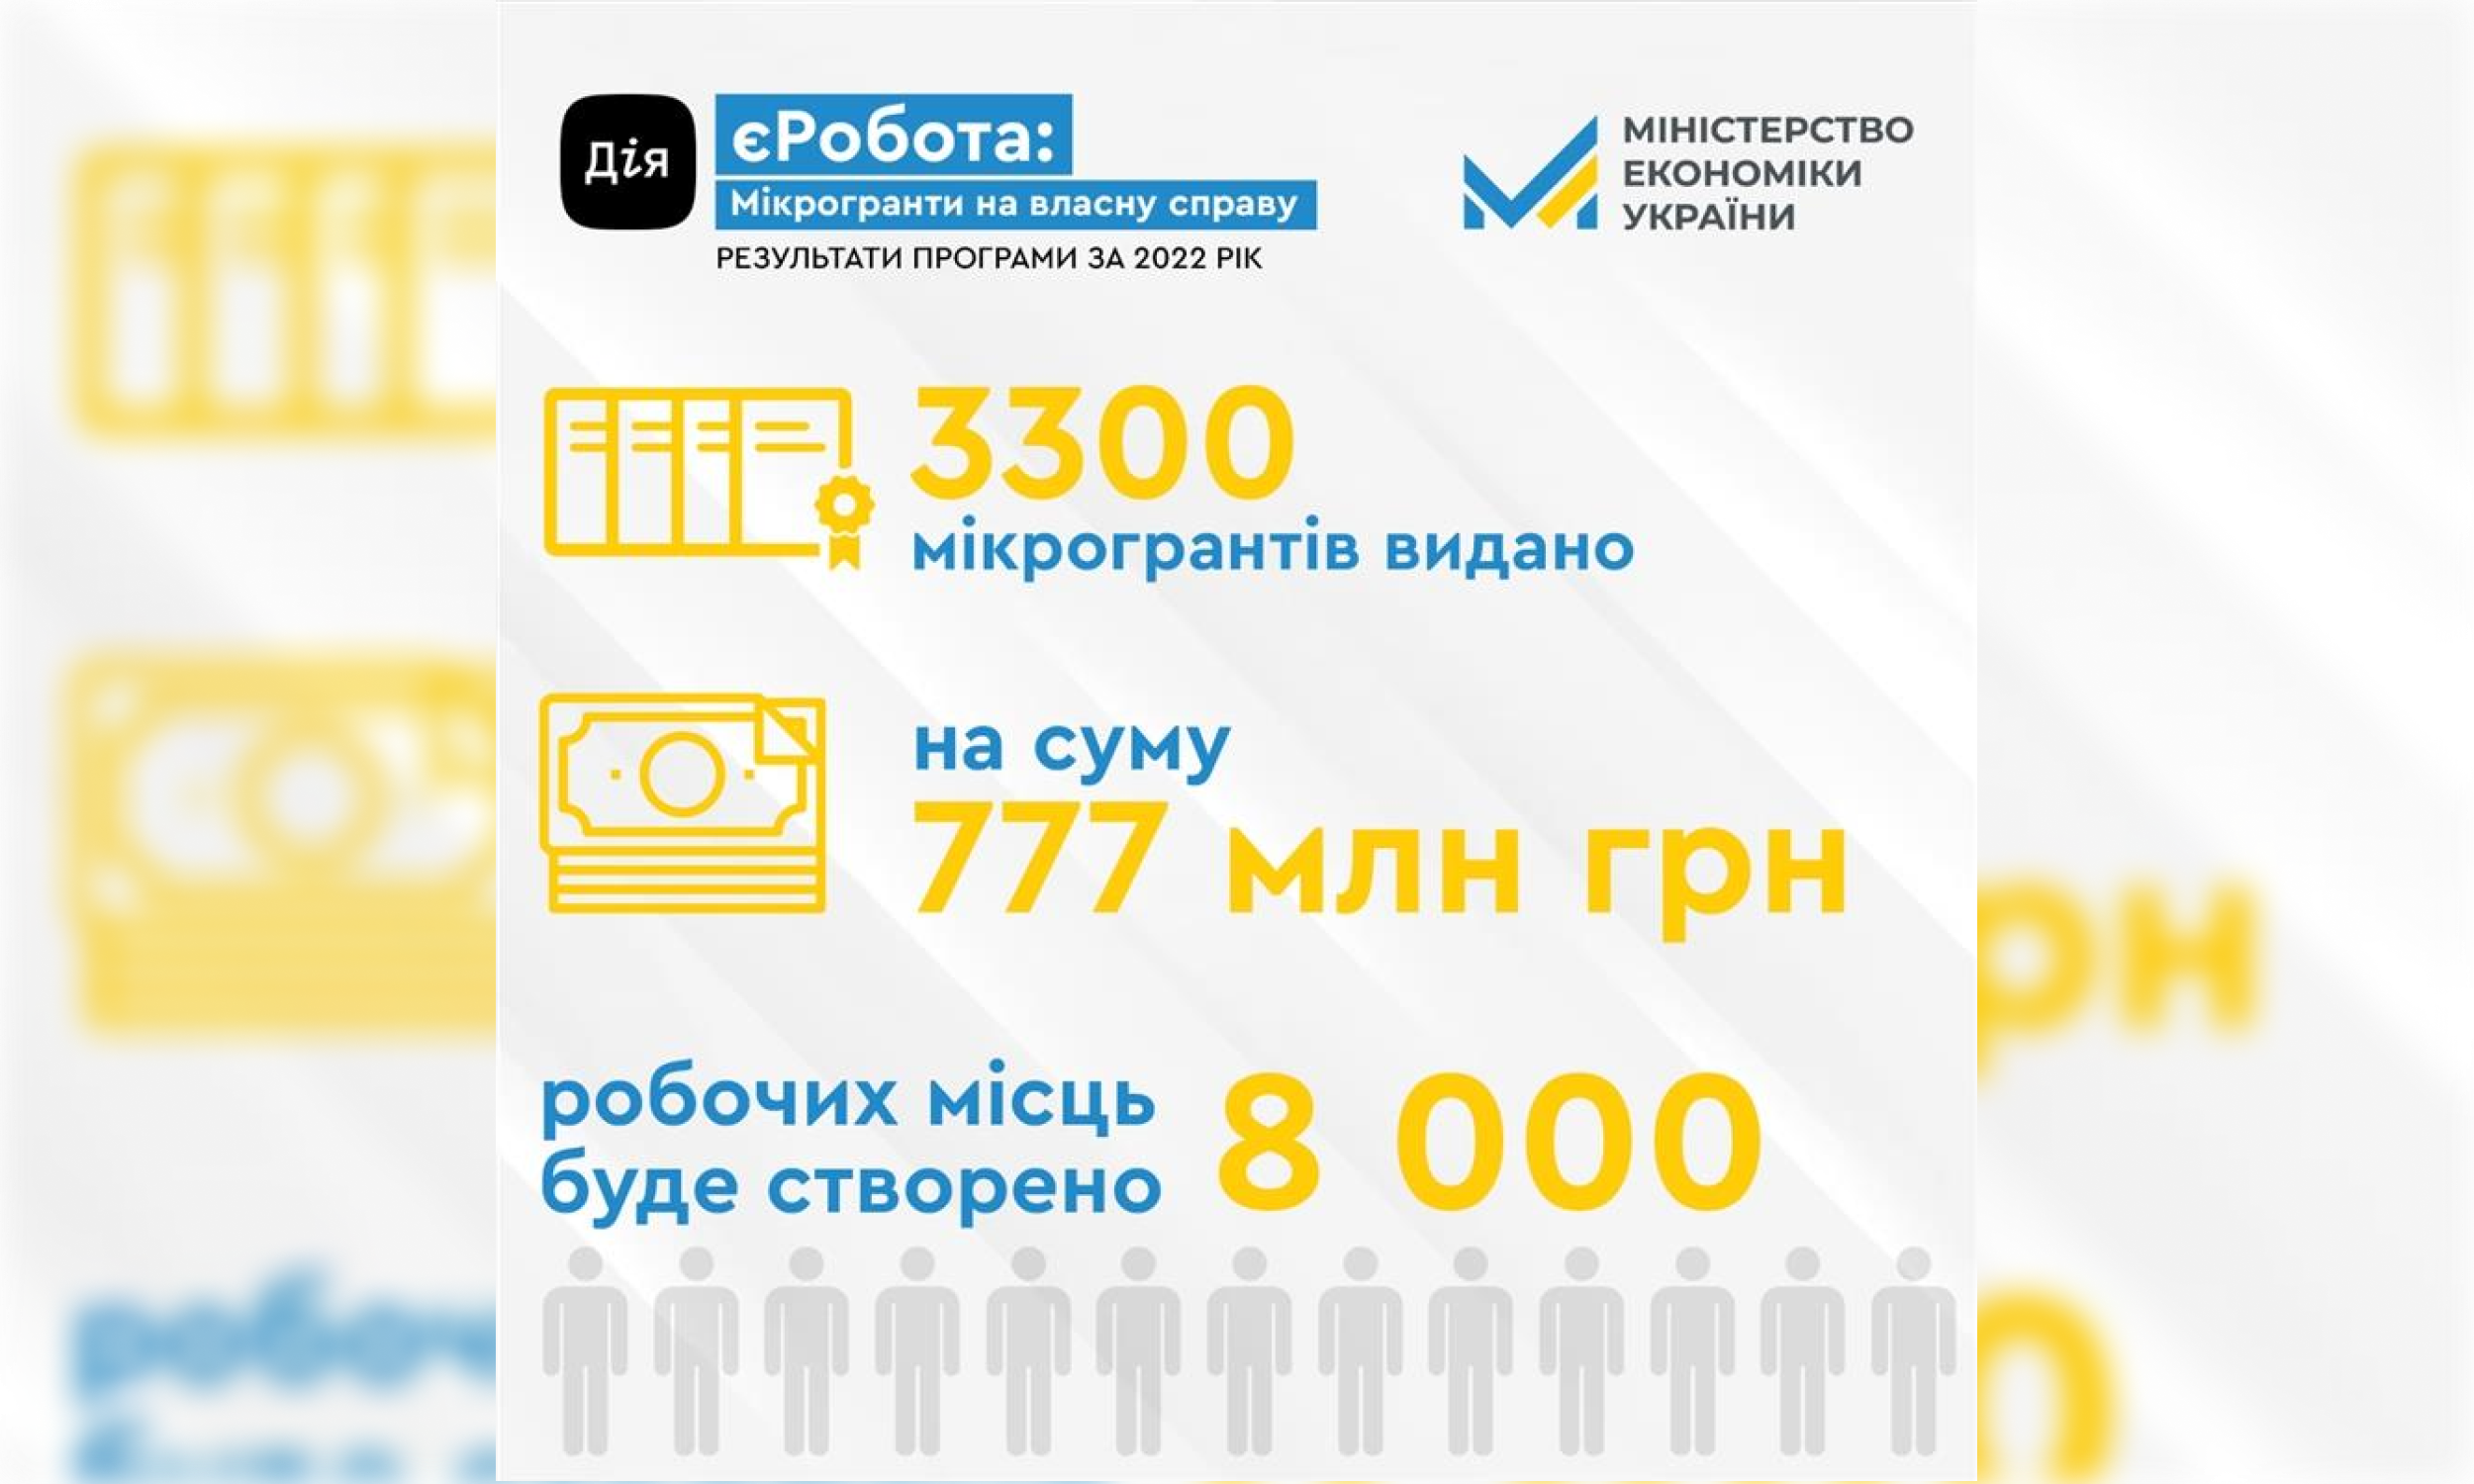 Міністерство економіки України: 1 лютого стартувала нова хвиля подачі заяв на урядову програму мікрогрантів єРобота